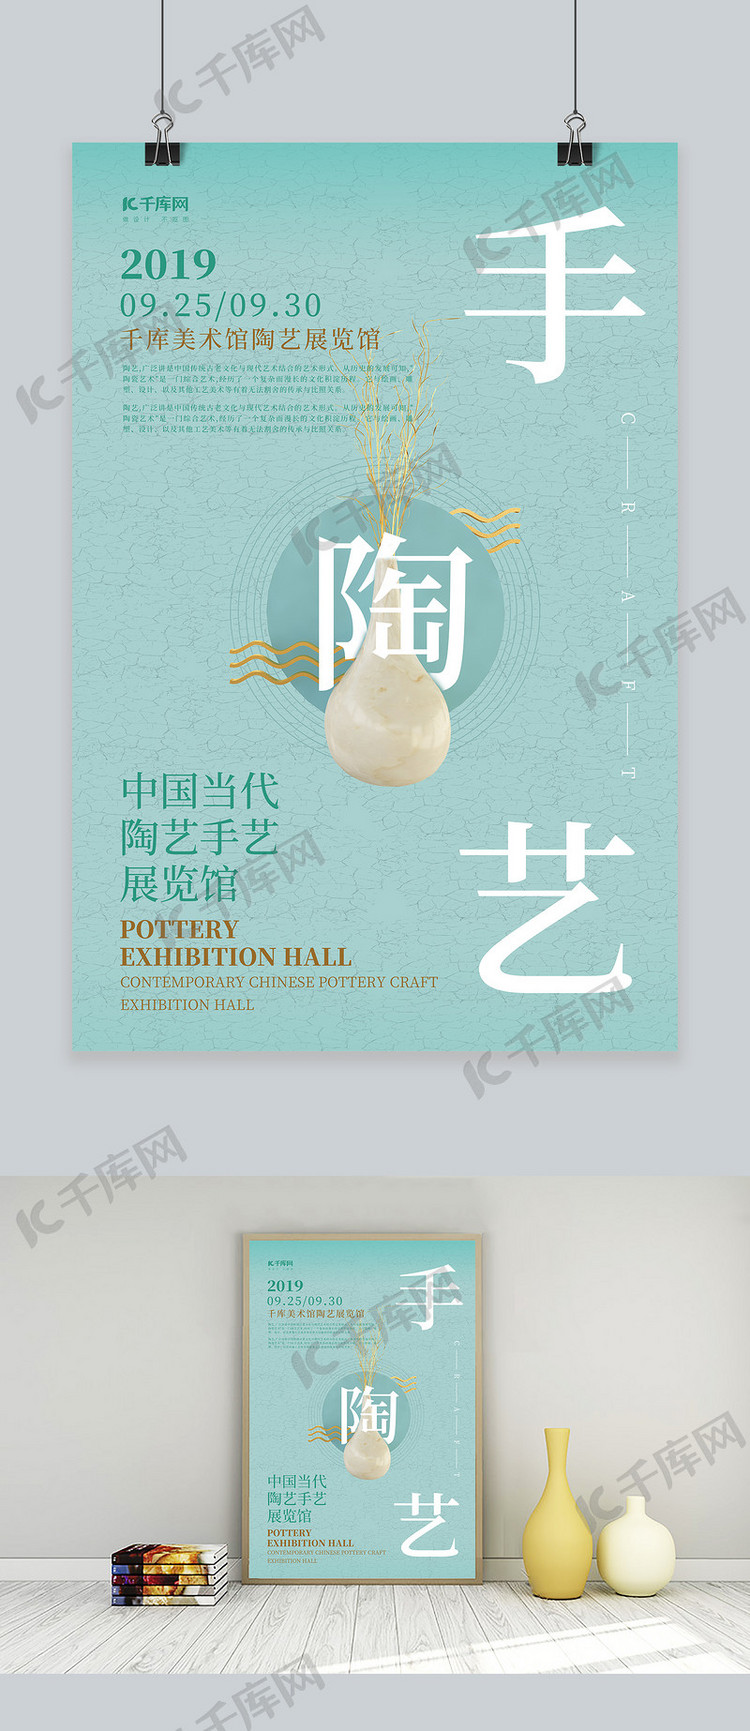 陶艺展览艺术手艺展览馆美术技术宣传海报